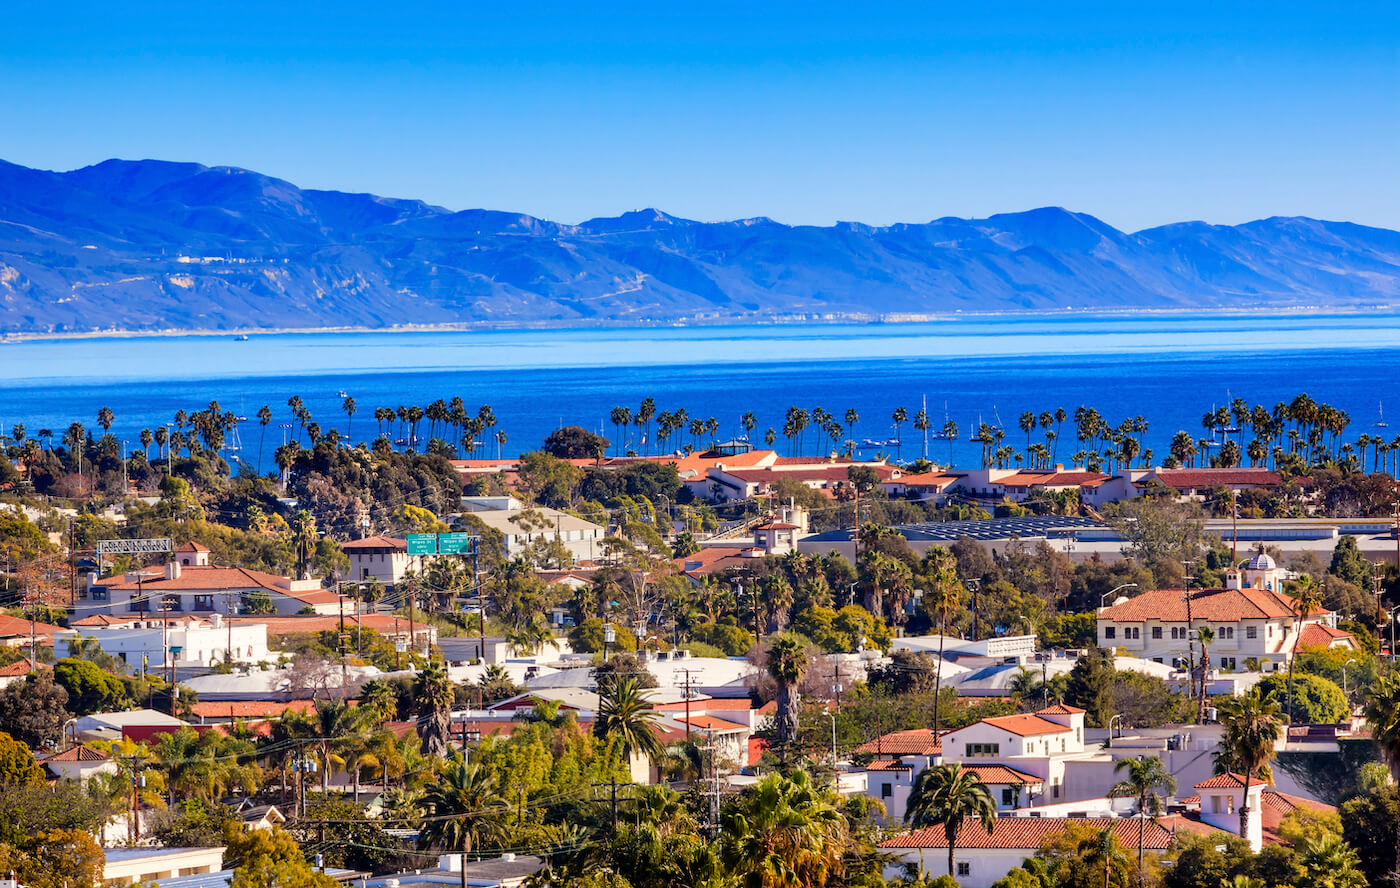 Santa Barbara's city view